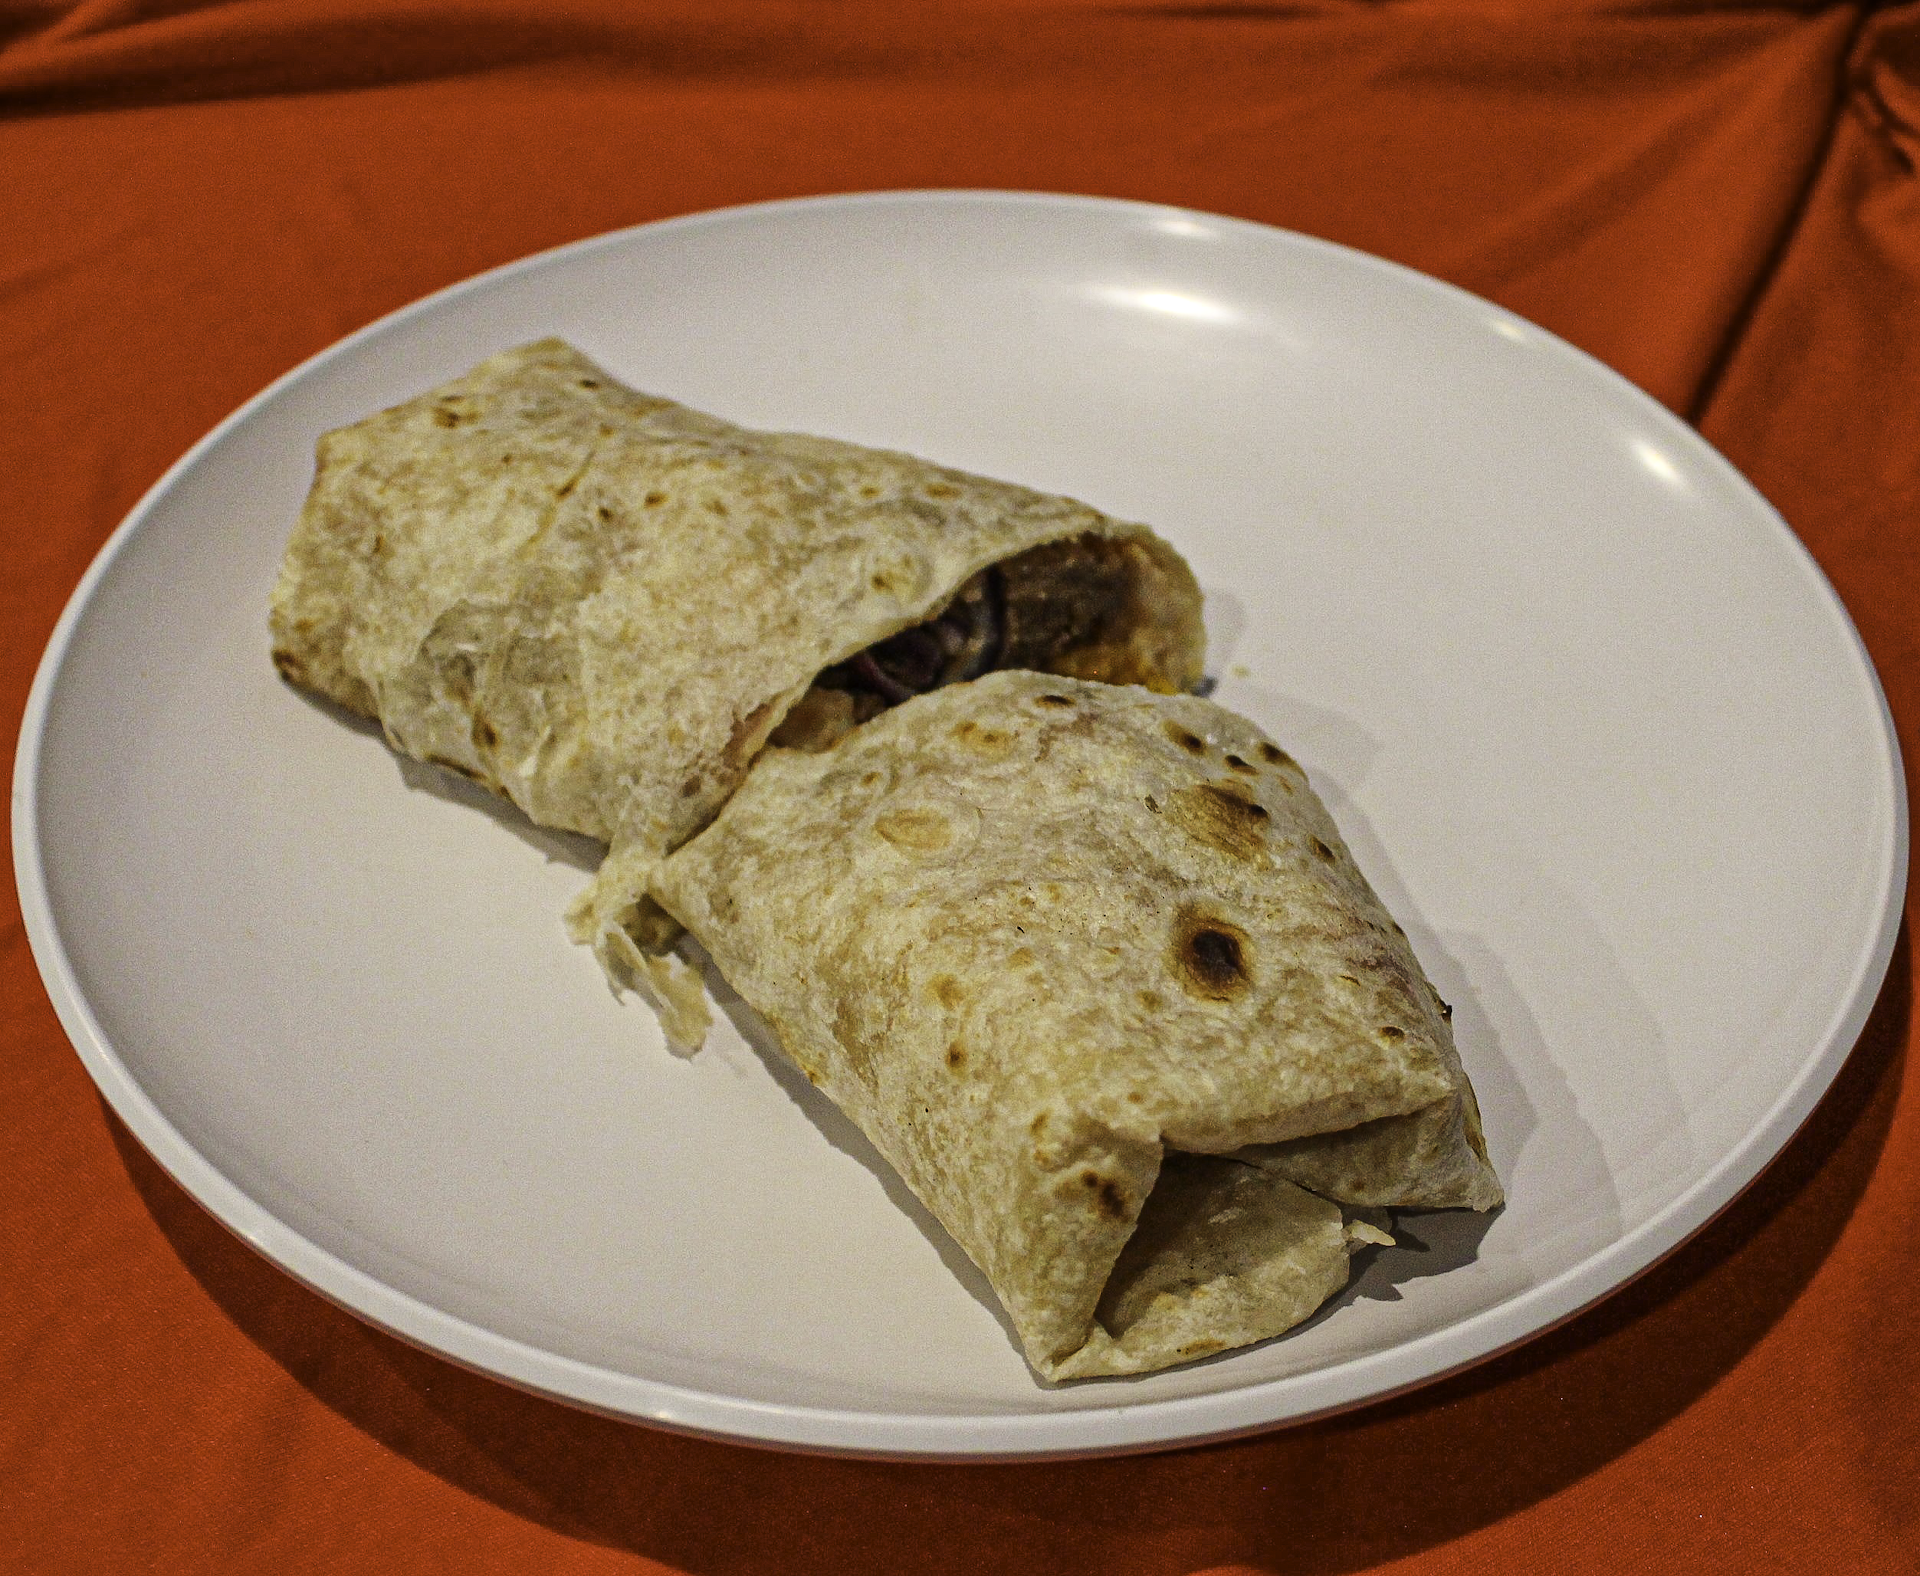 Picture of a burrito